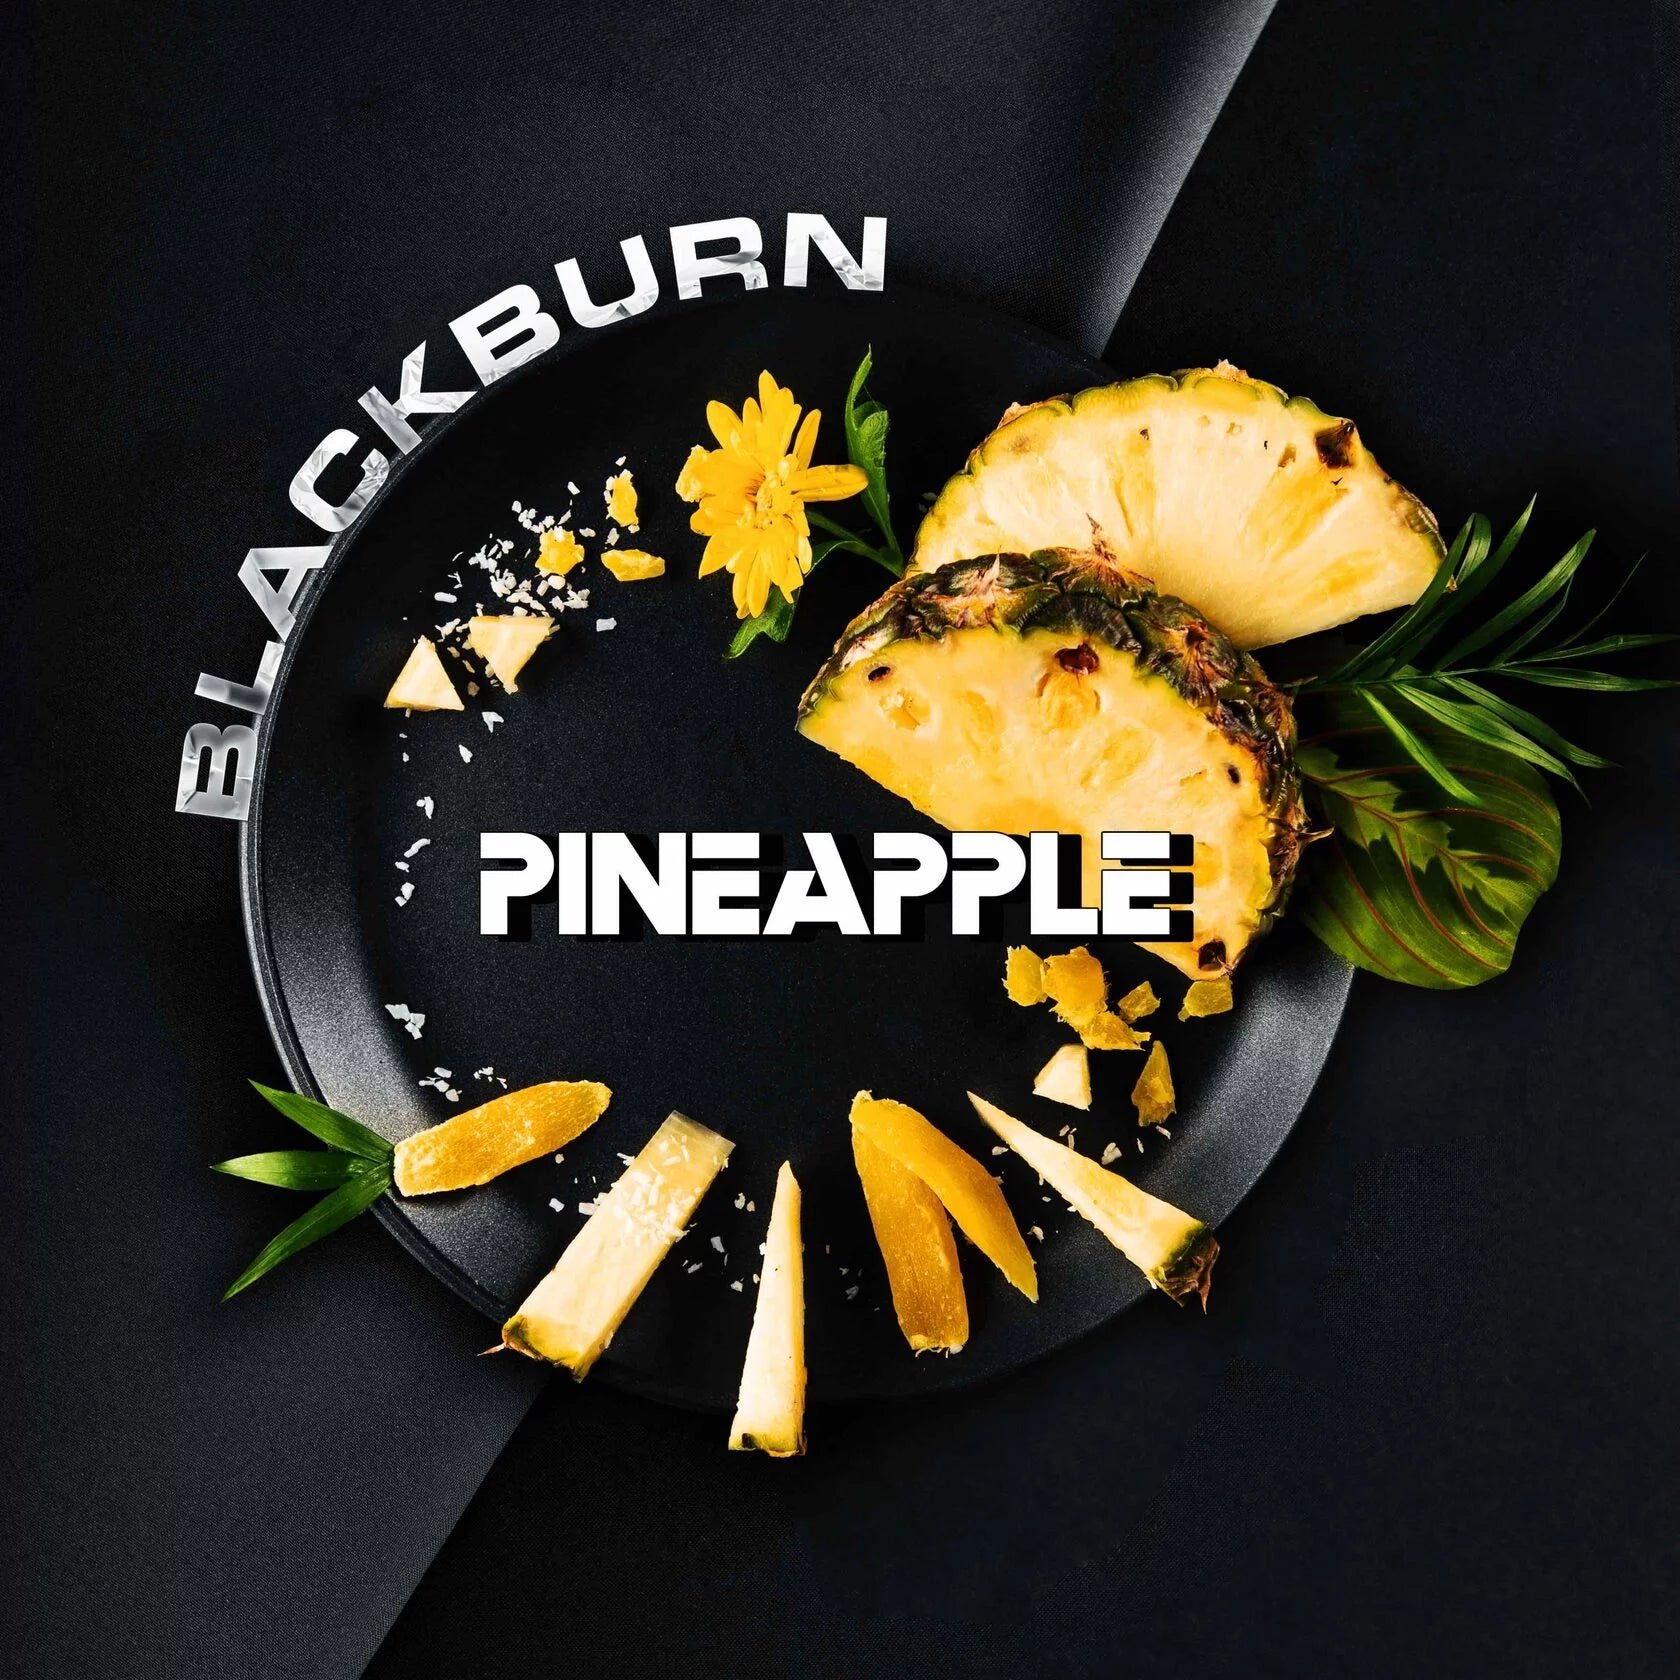 Blackburn Pineapple Shisha flavor